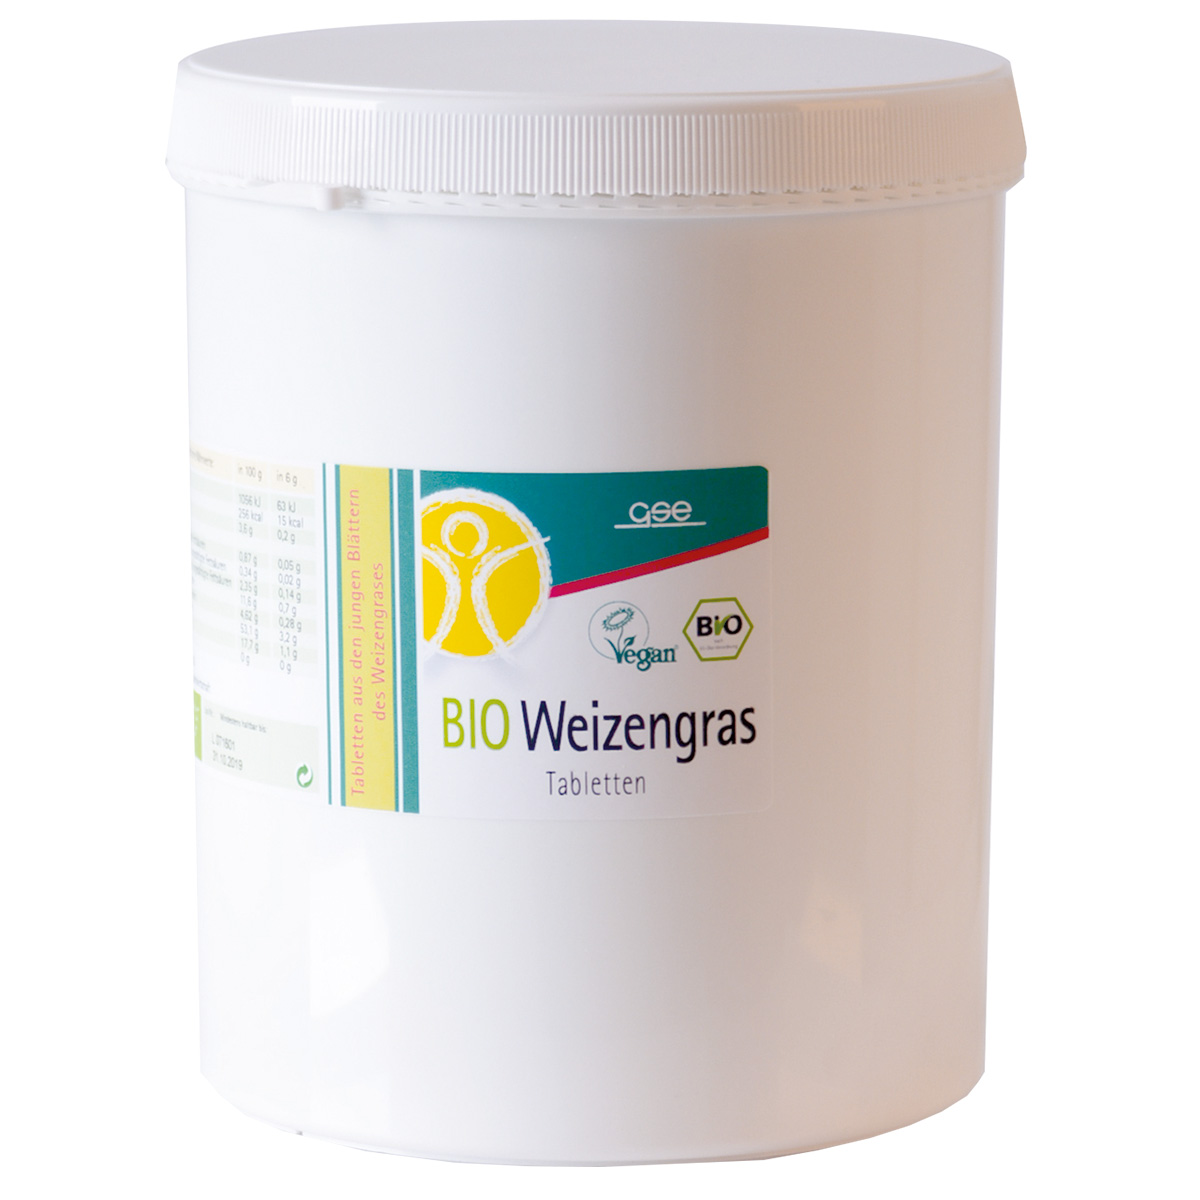 Weizengras Tabletten (Bio)